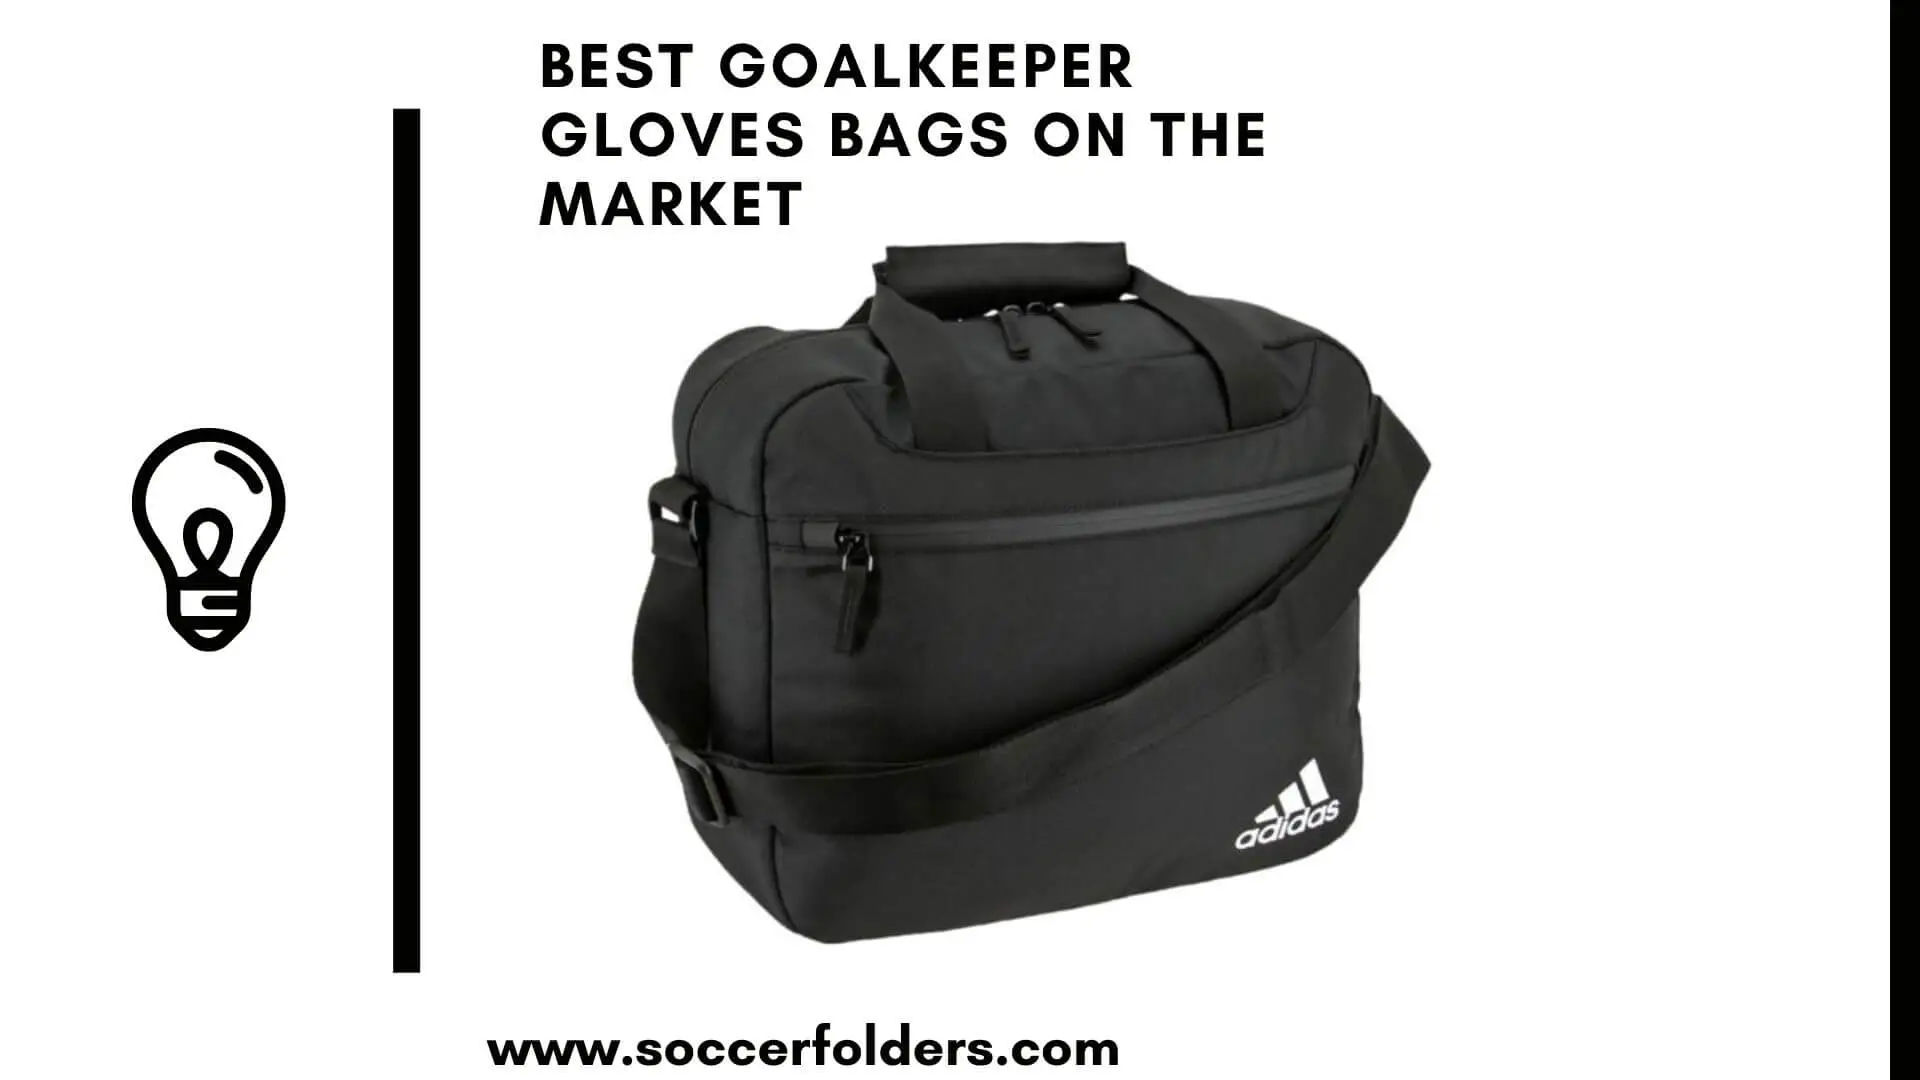 Goalkeeper gloves bag - Featured image